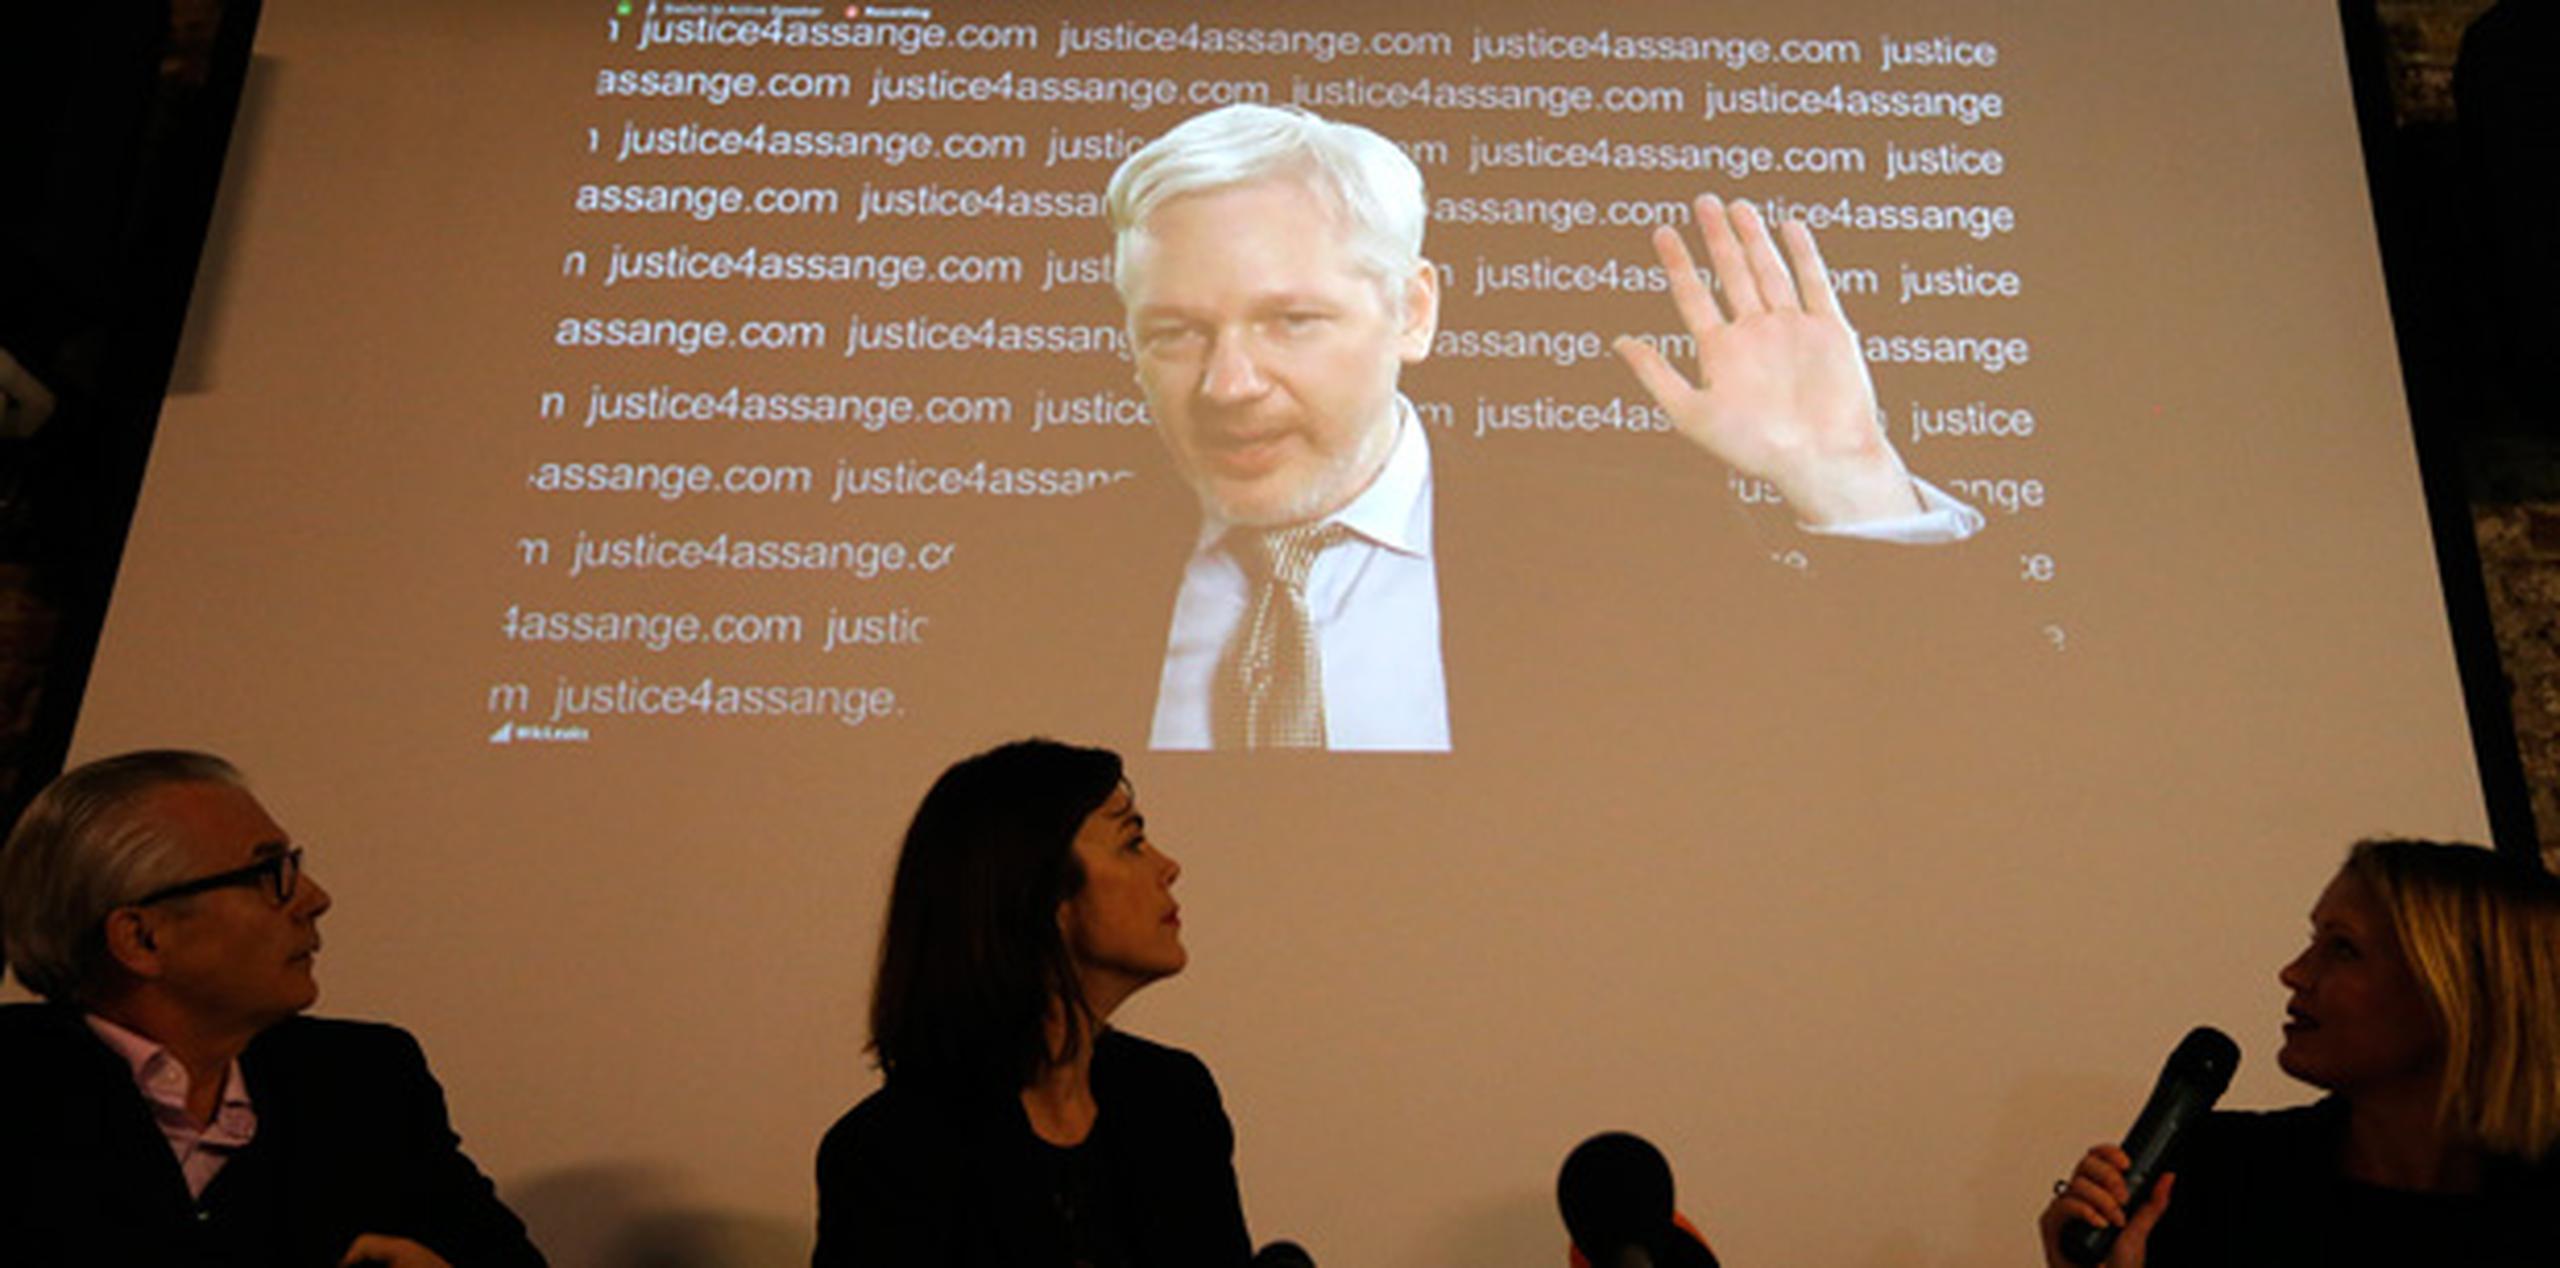 En una rueda de prensa por videoconferencia desde la embajada de Ecuador en Londres, donde está refugiado, Assange se refirió a la respuesta del ministro británico de Exteriores, Philip Hammond, que tildó de "ridículas" las conclusiones de la ONU, que determinan que su detención ha sido "arbitraria". (AP)